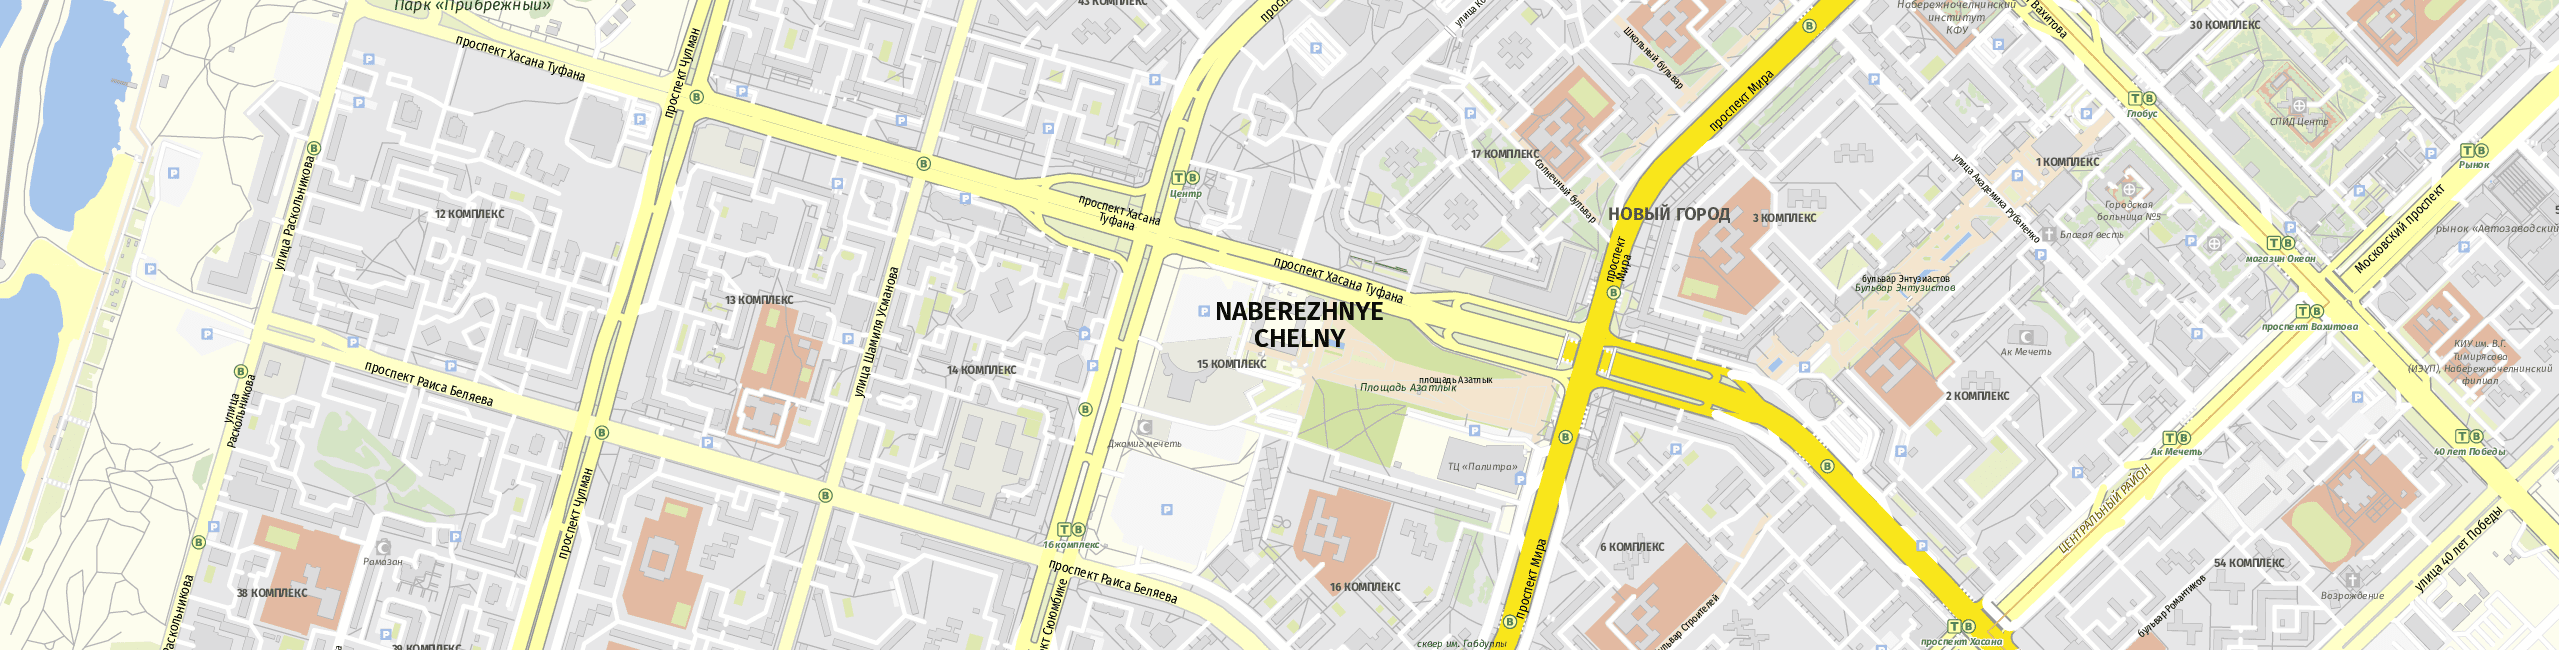 Stadtplan Naberezhnye Chelny zum Downloaden.